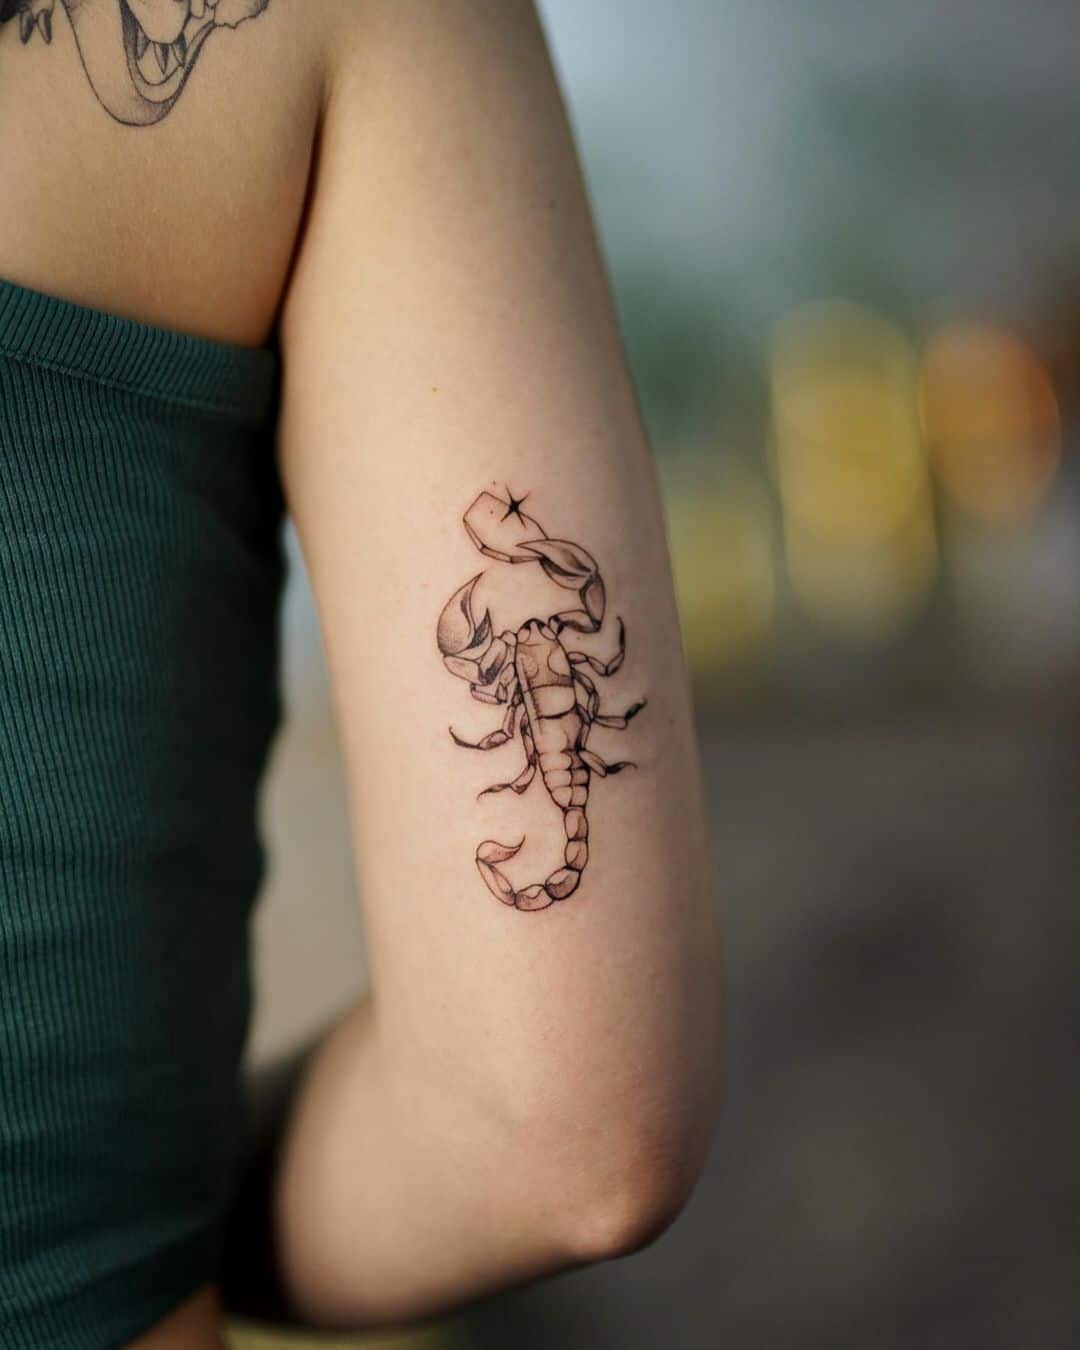 25 Stylish Scorpion Tattoos On Neck  Tattoo Designs  TattoosBagcom